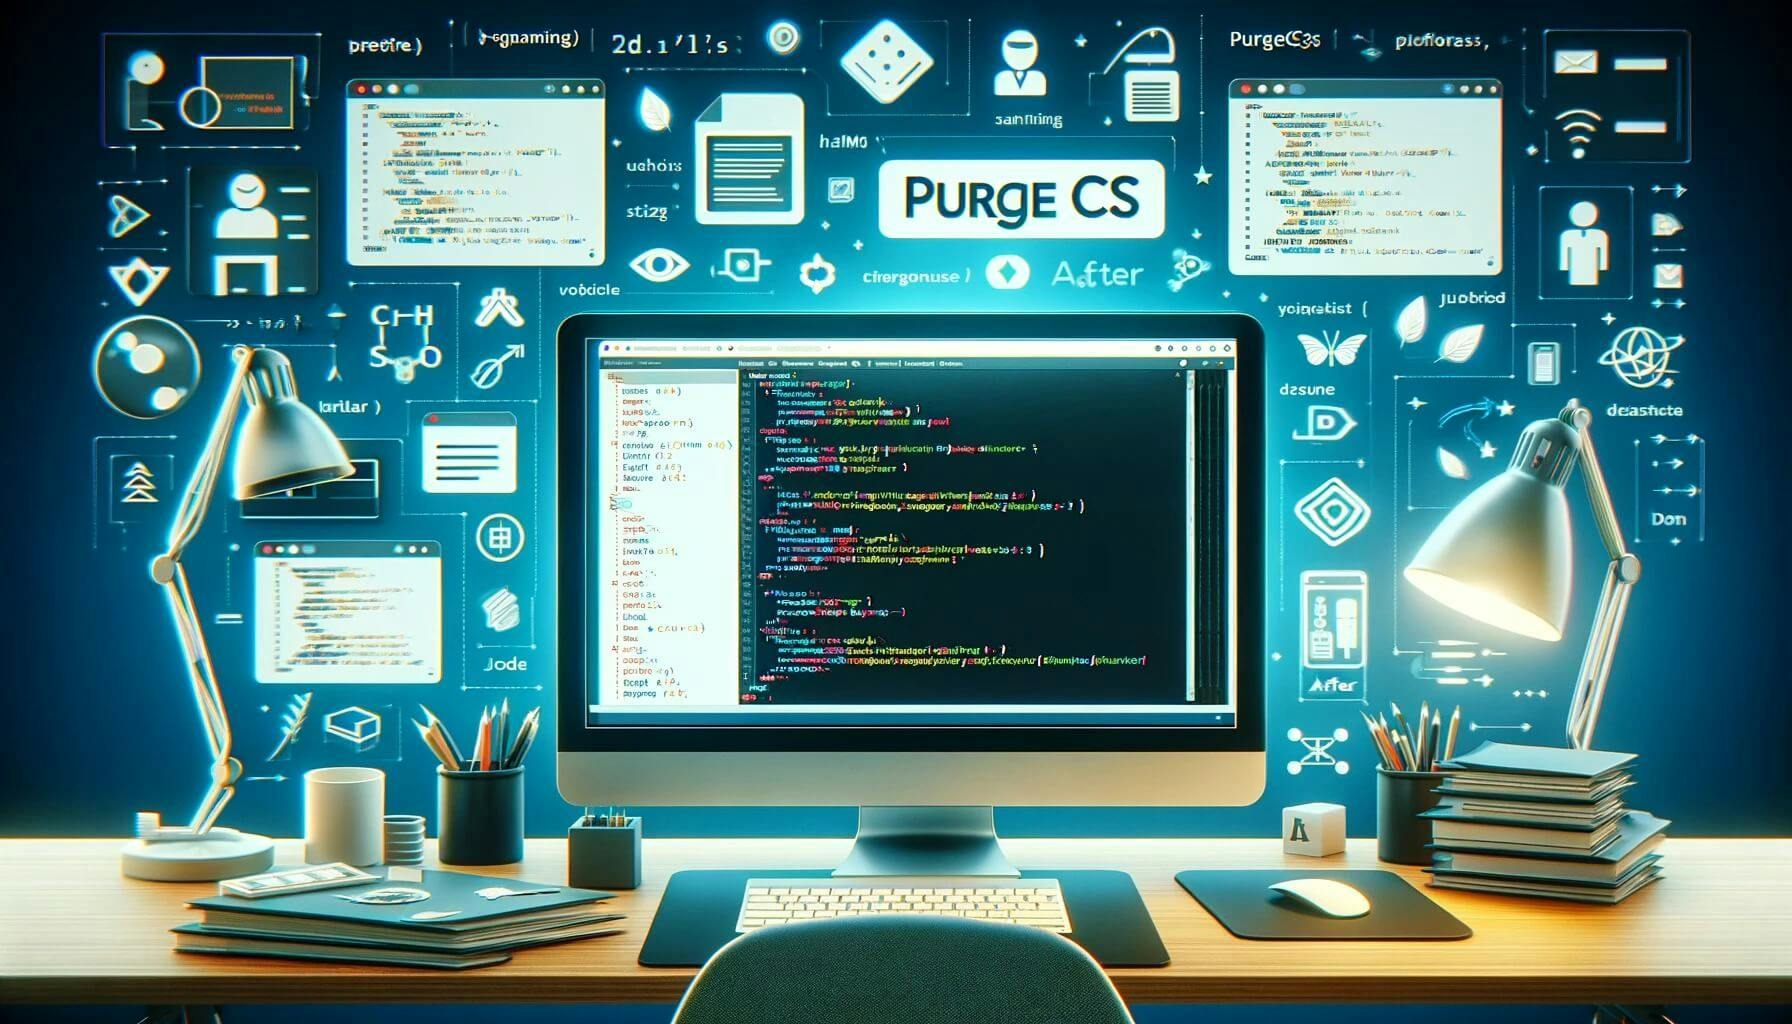 komputer, PurgeCSS